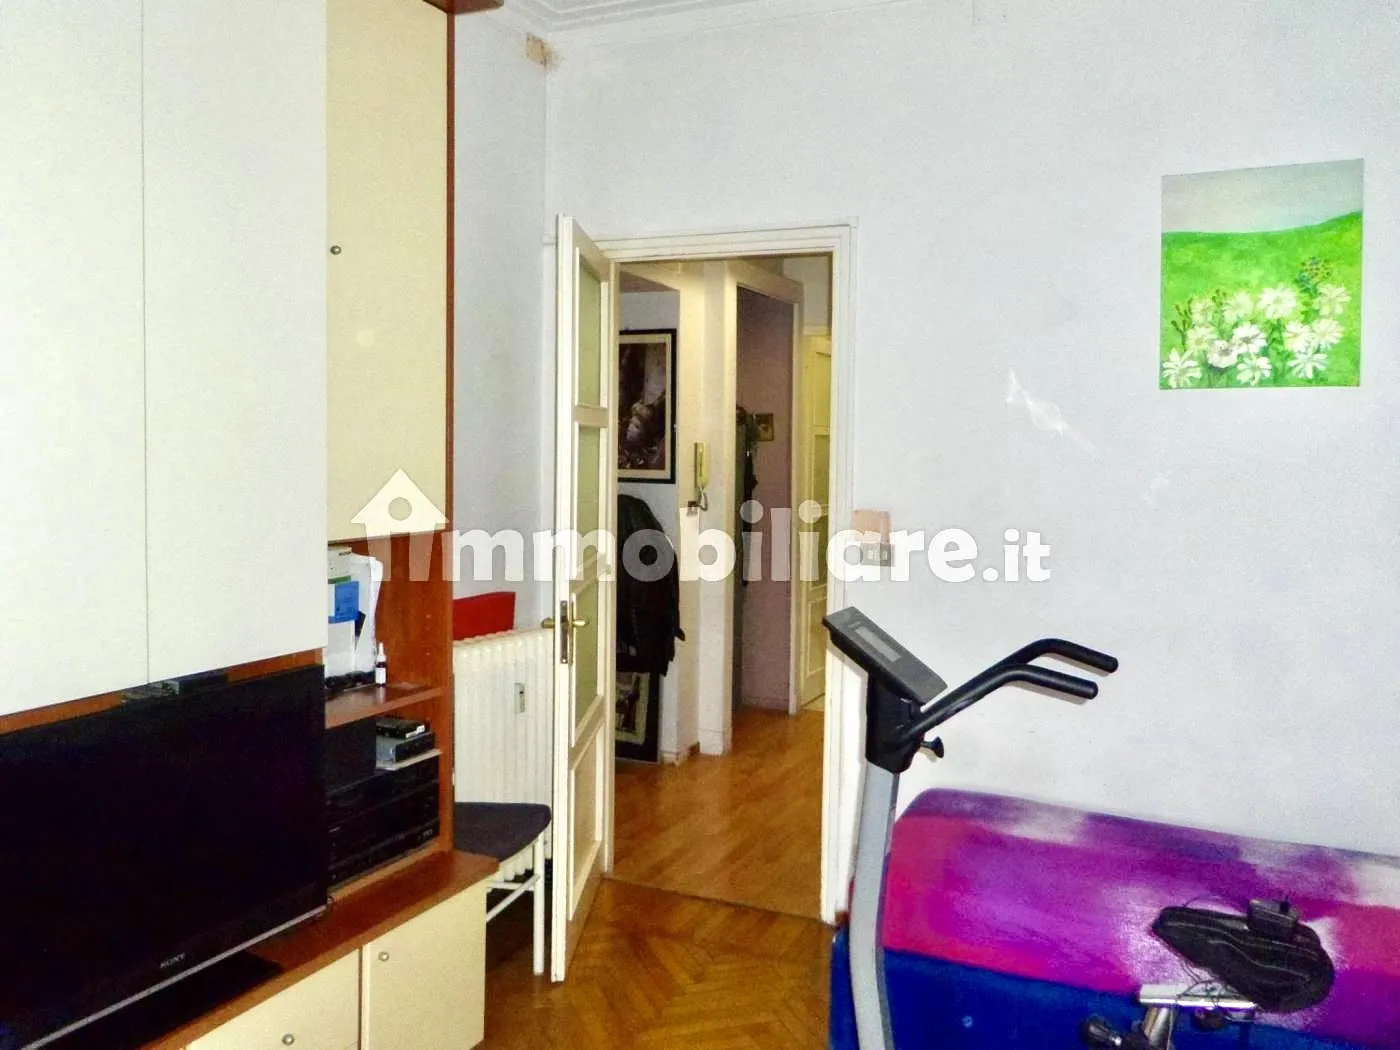 Immagine per Appartamento in Vendita a Torino Via Francesco Cigna 158